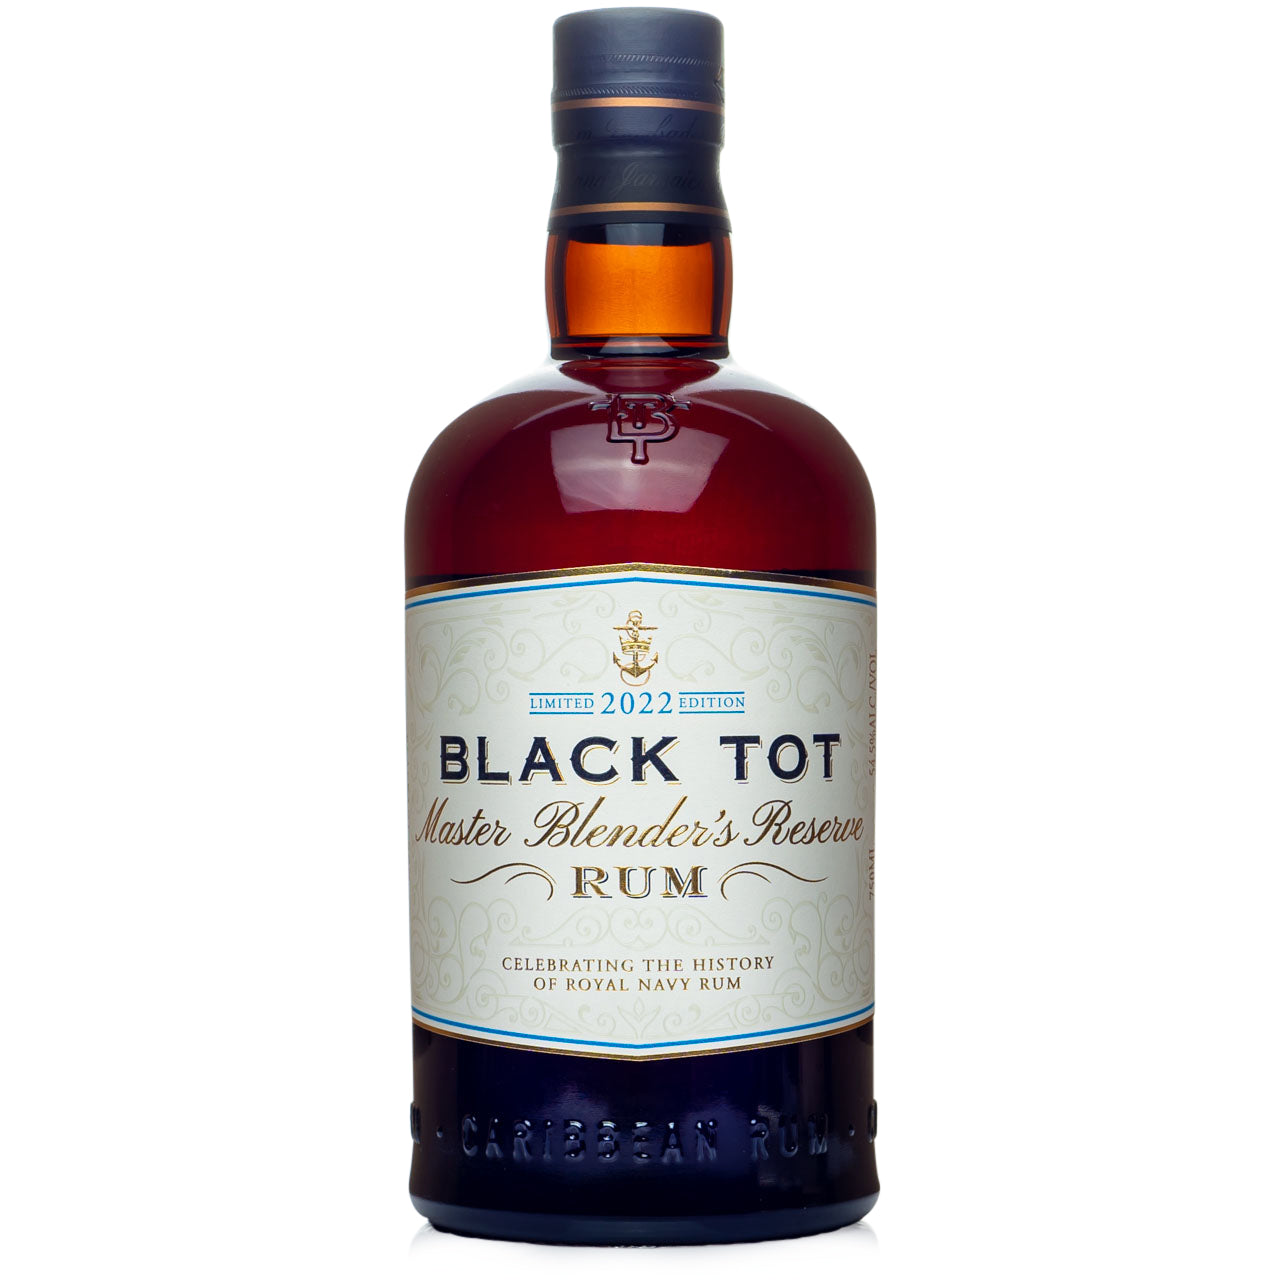 Black Tot 2022 Limited Edition Master Blender's Reserve Rum